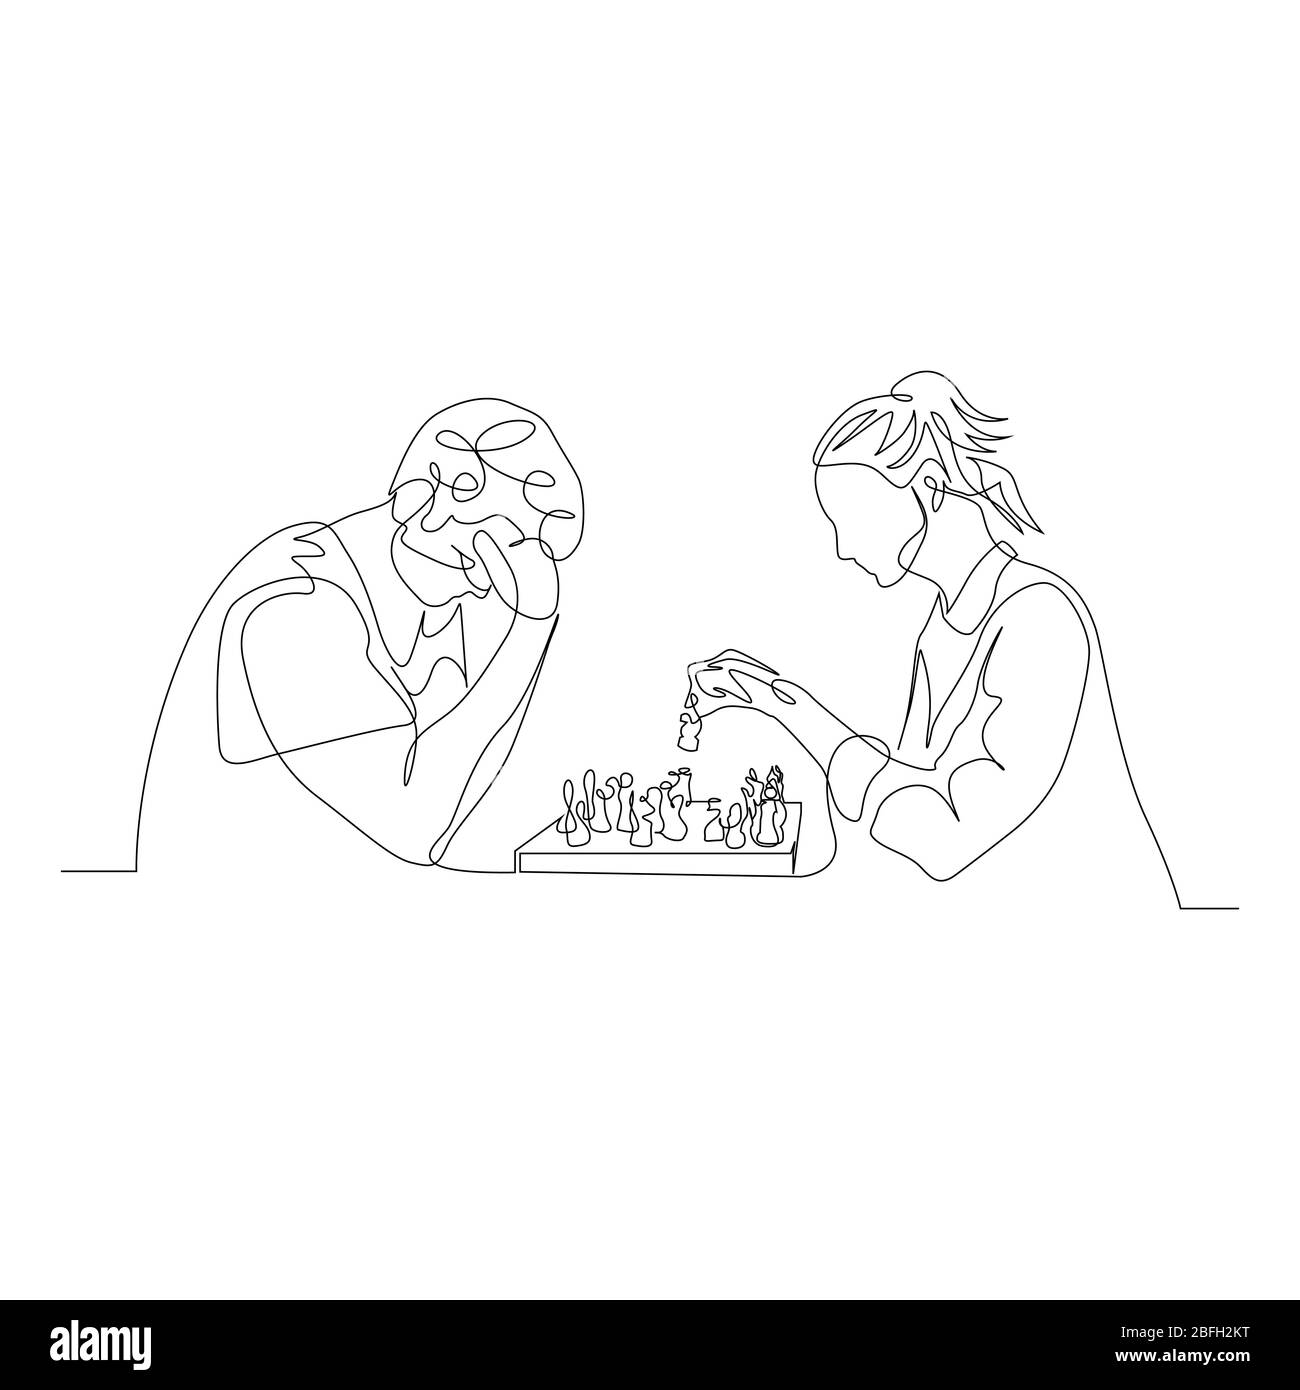 Un homme et une femme de ligne continue jouent aux échecs. L'homme pense que la femme fait un mouvement. Illustration vectorielle. Illustration de Vecteur